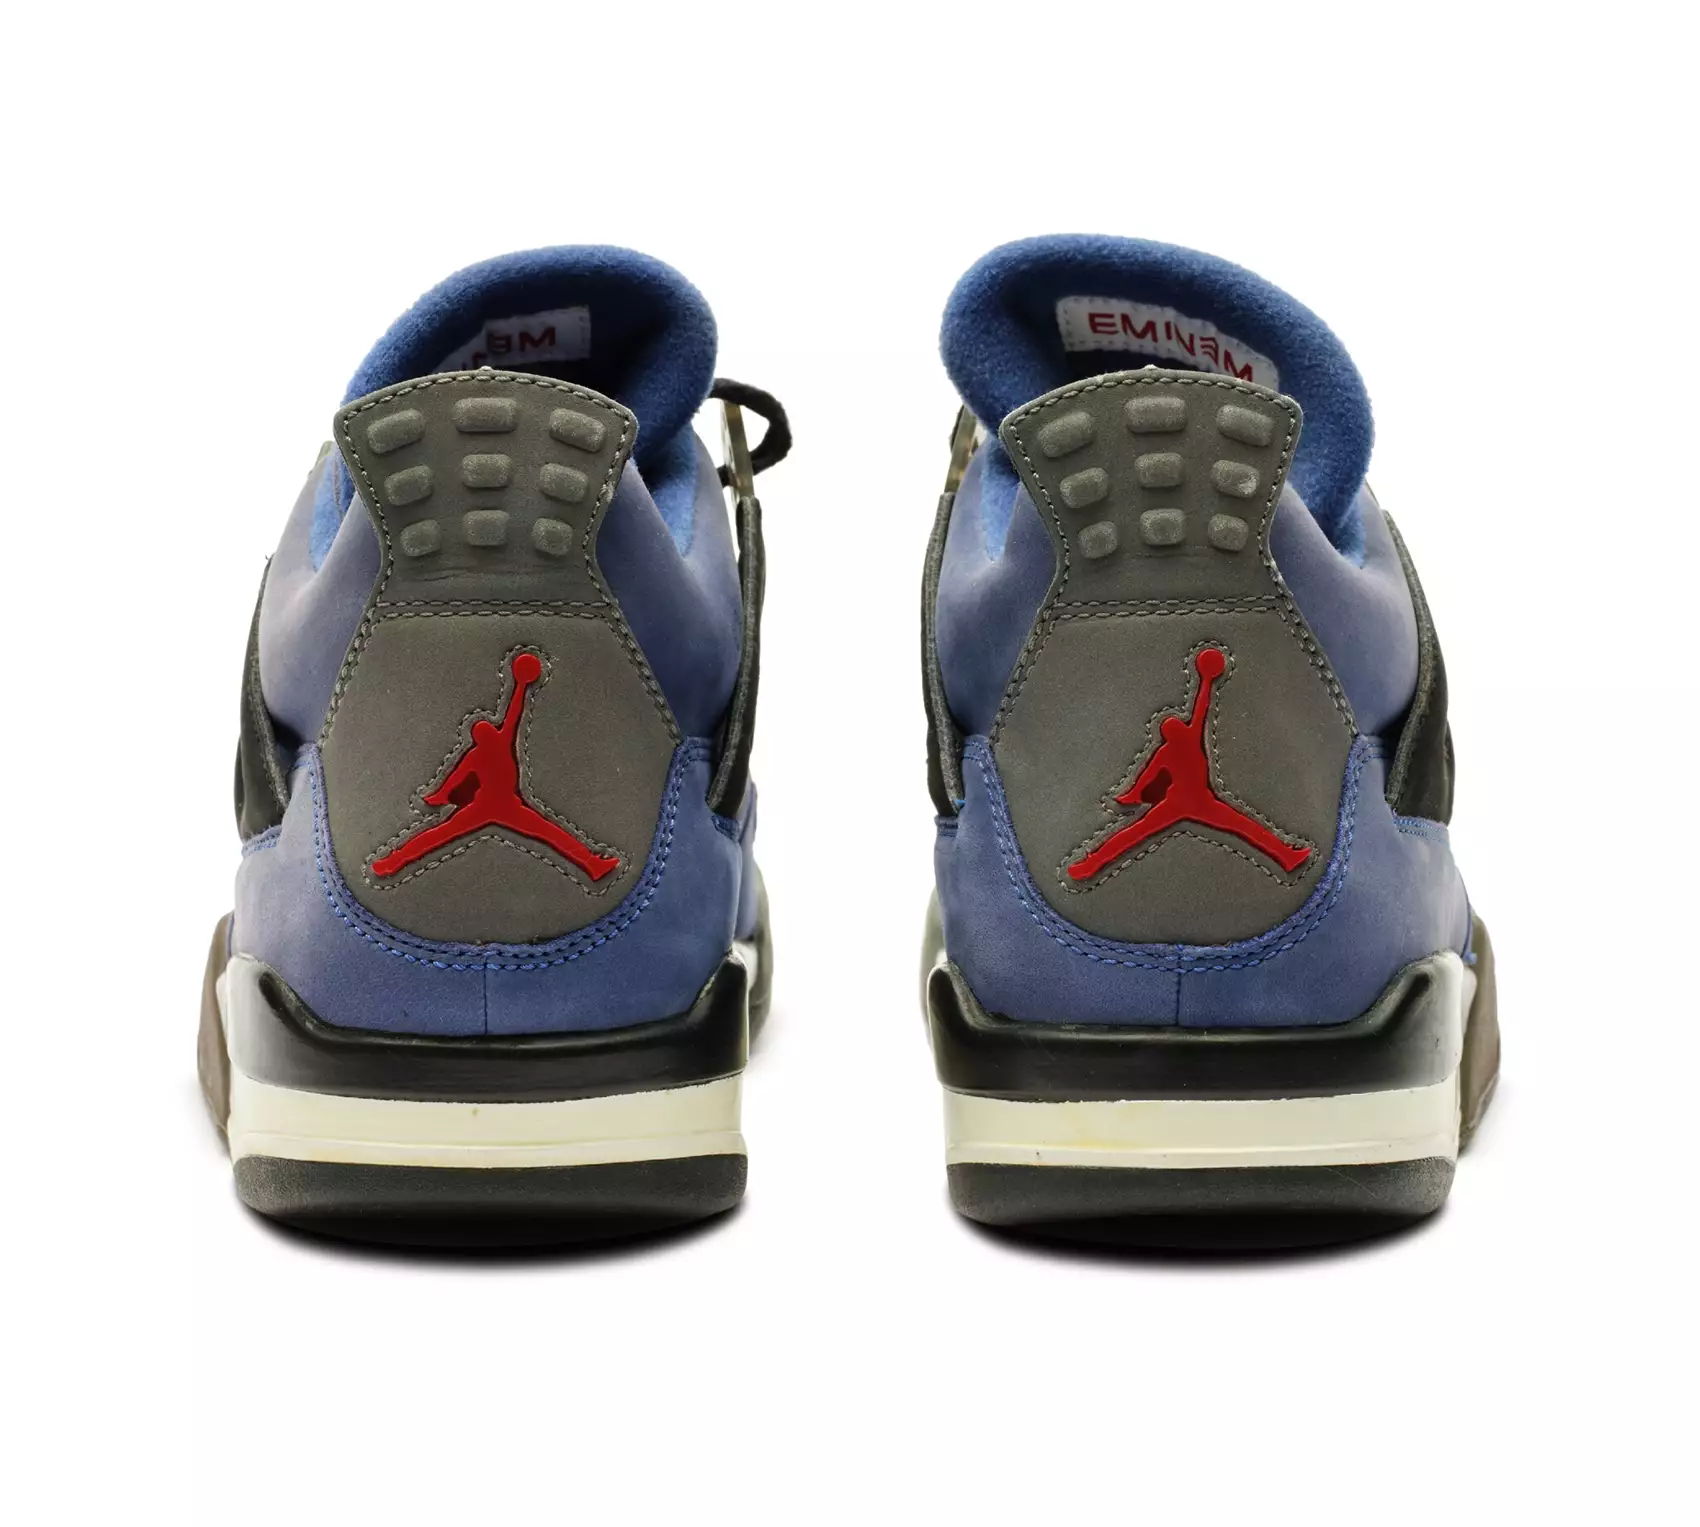 La Nike Air Jordan 4 Retro Eminem "Encore" 2005 est mise aux enchères par Sotheby's